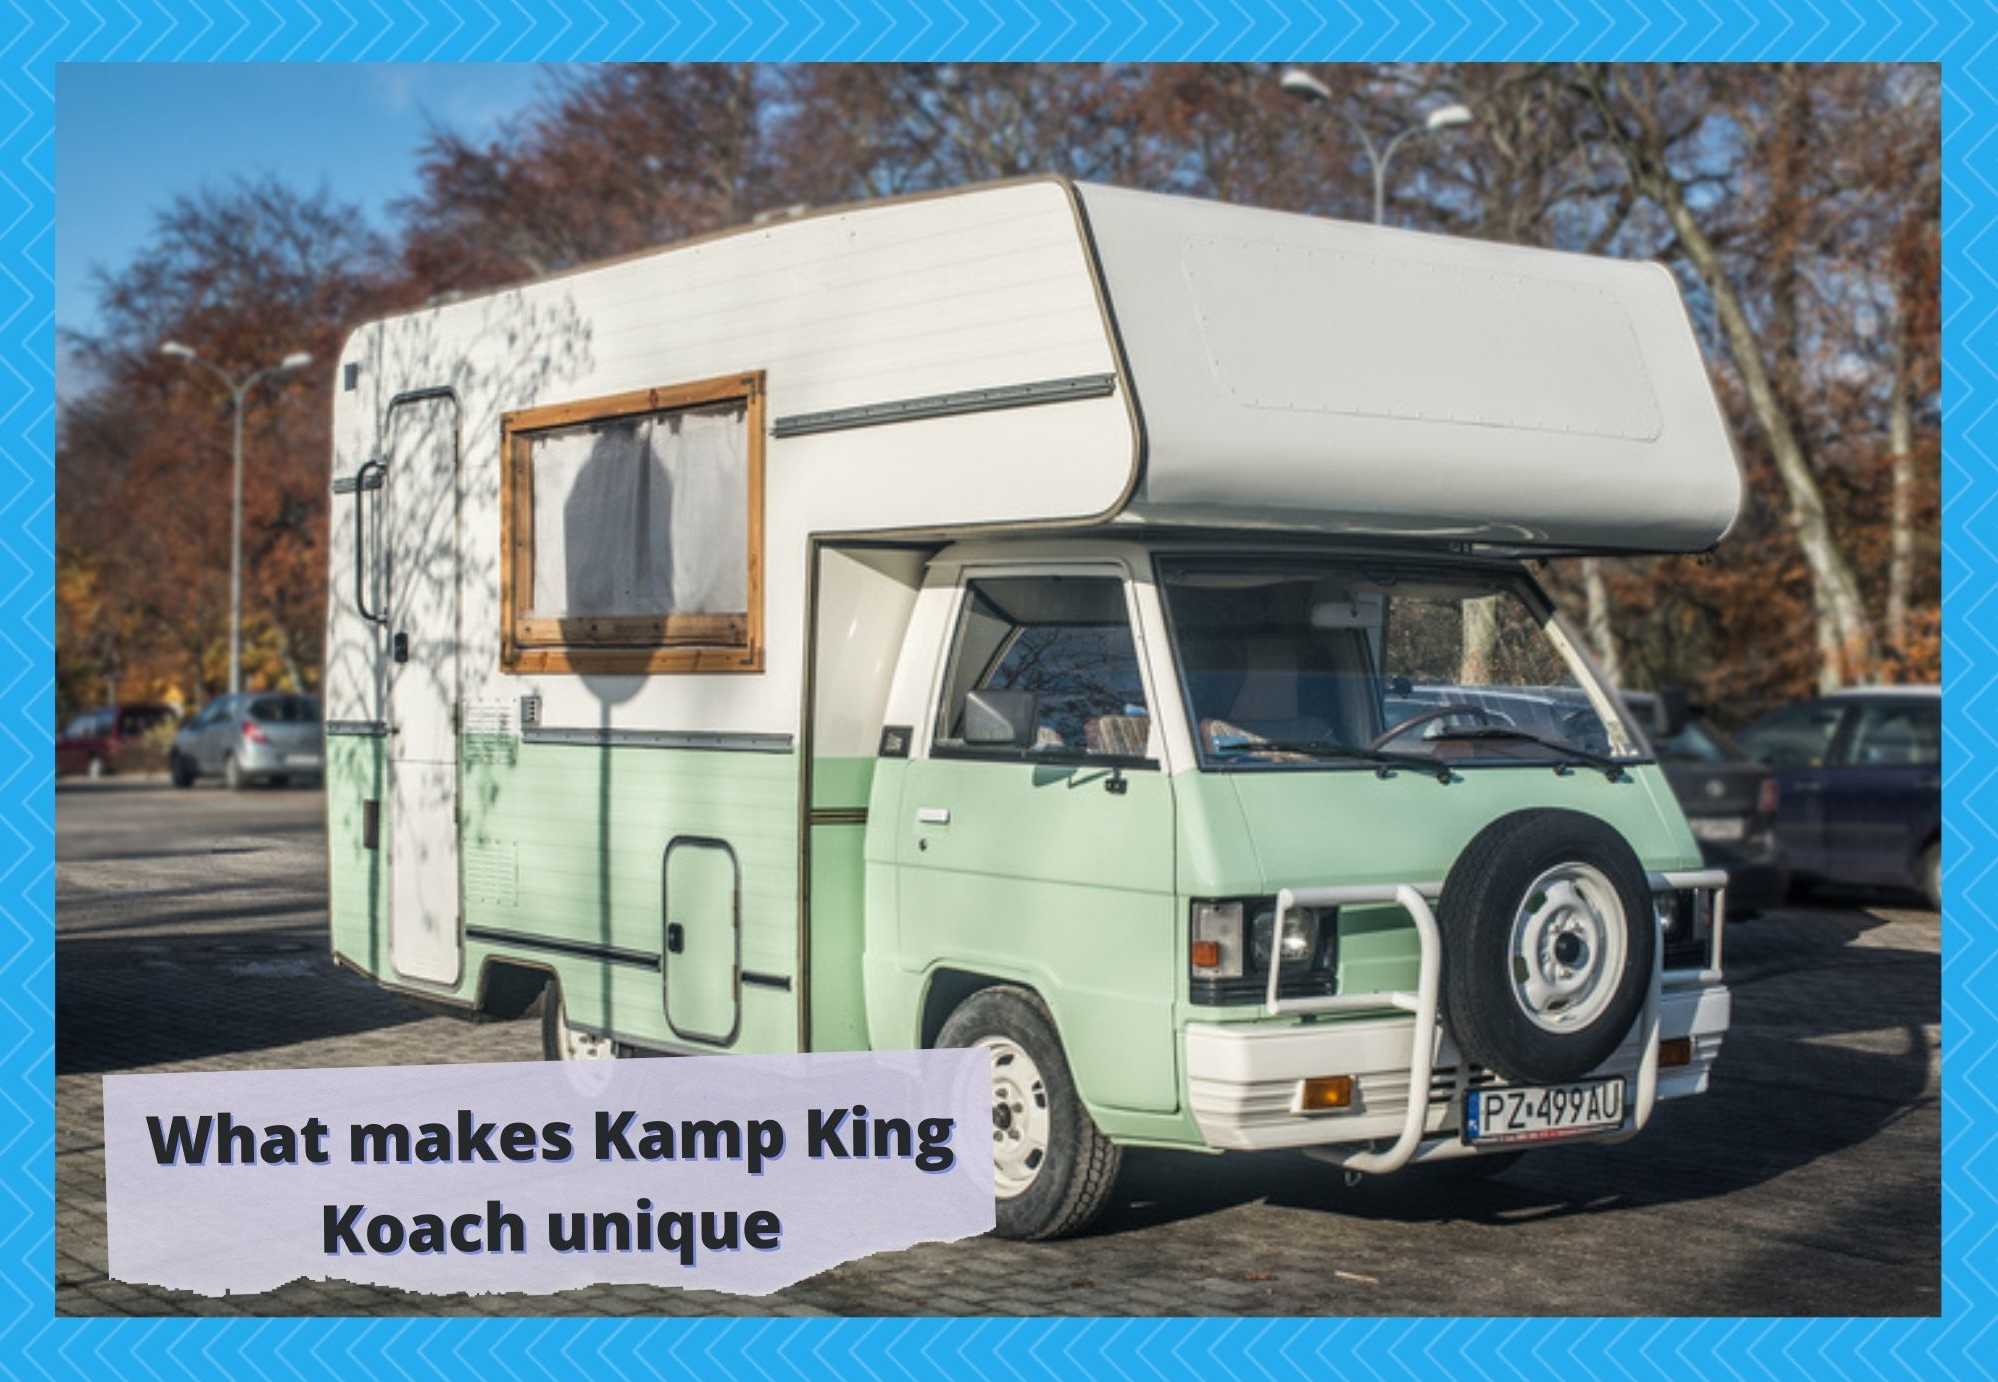 Kamp King Koaches